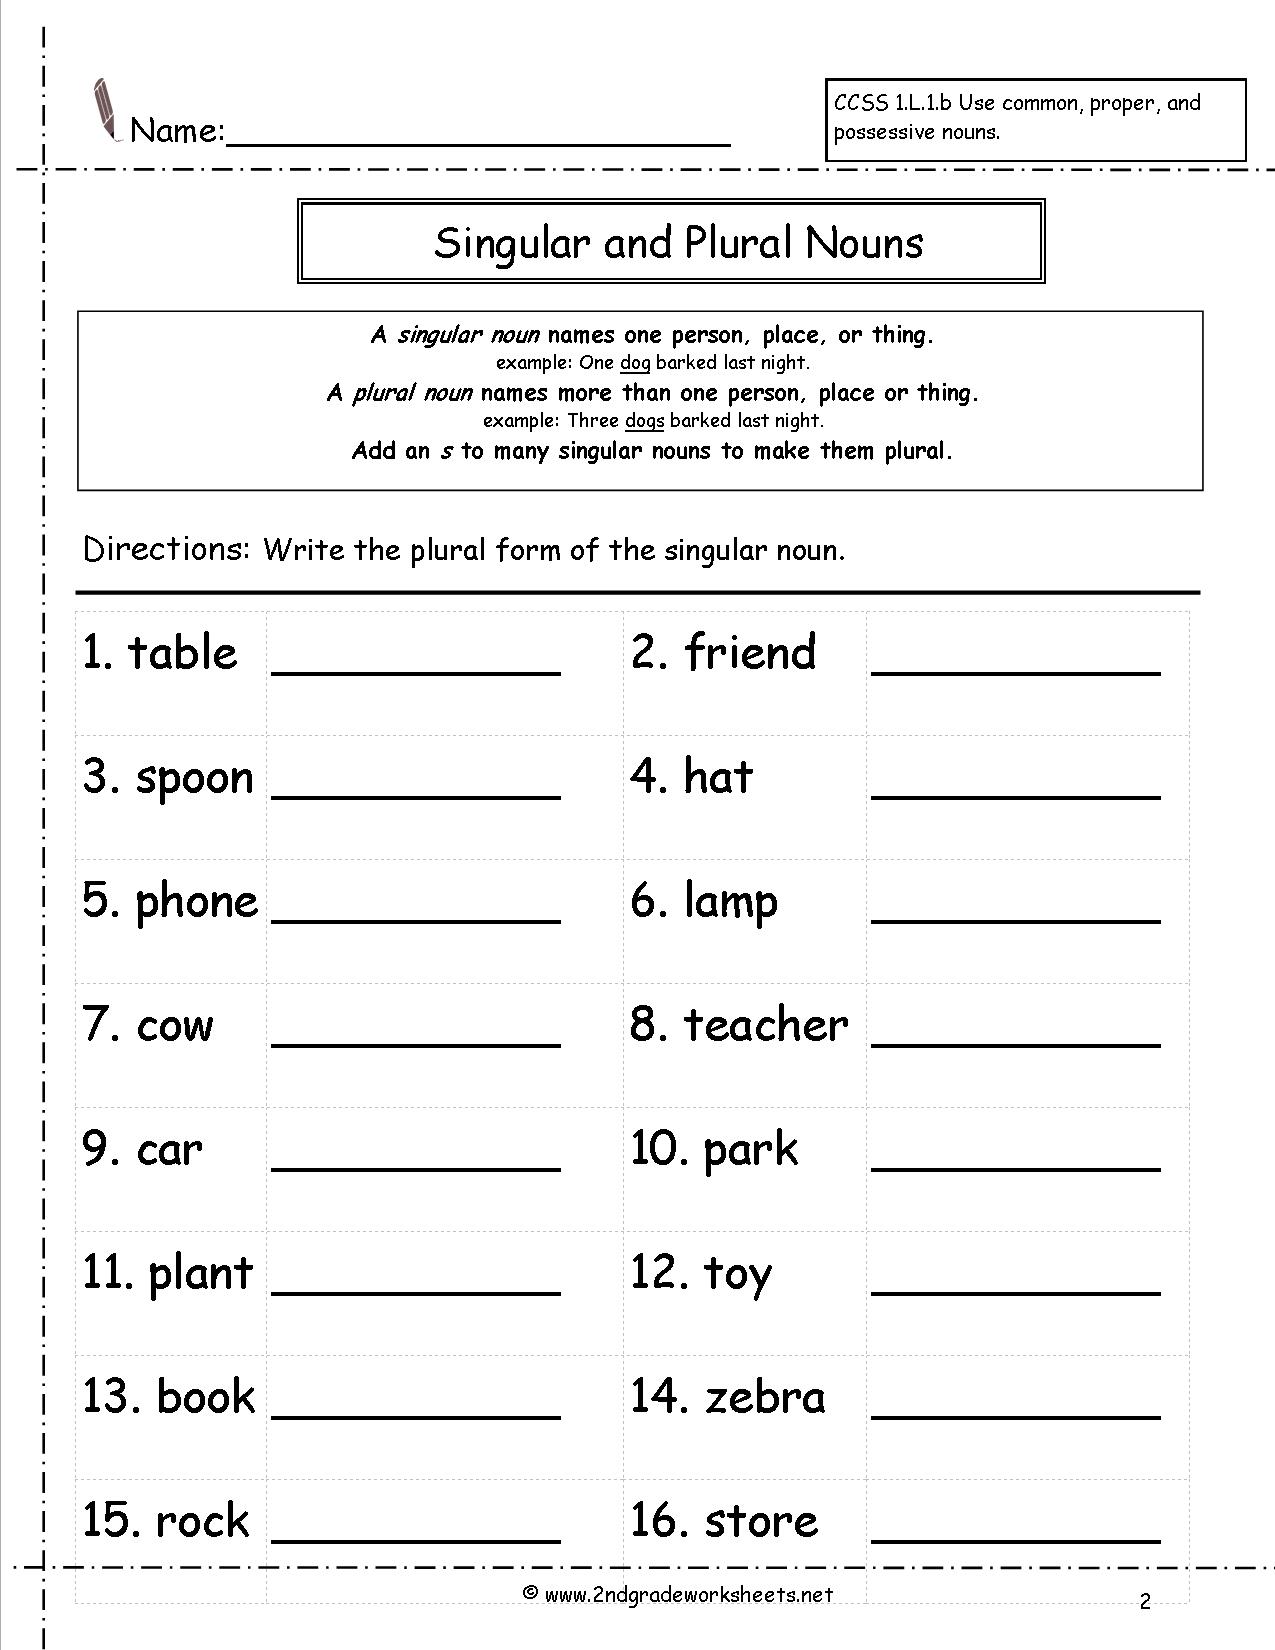 Free Singular And Plural Noun Worksheets